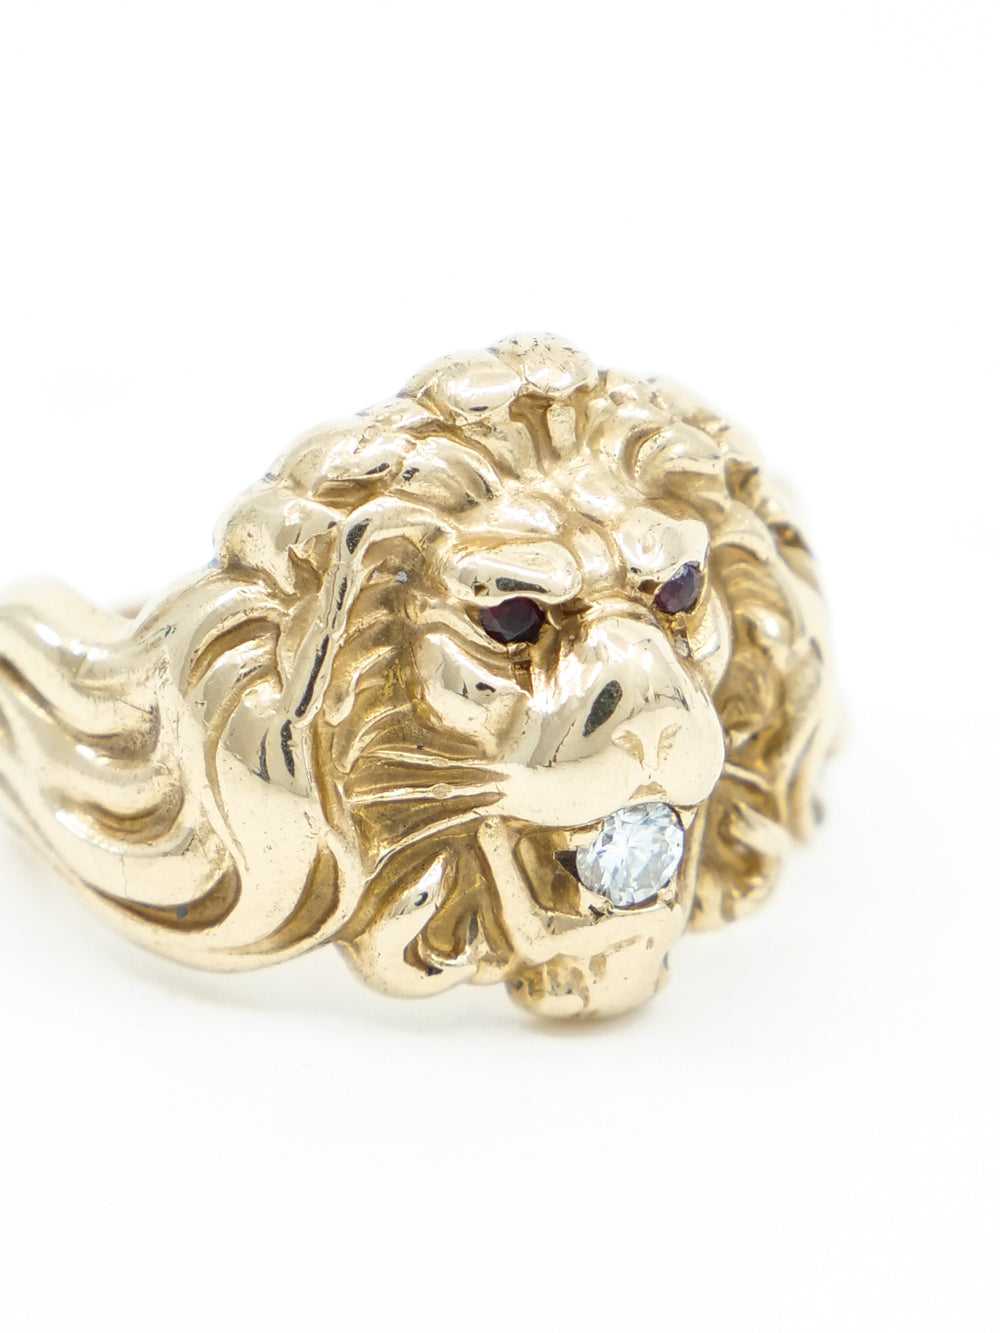 Antique 14k Lion Ring - image 2